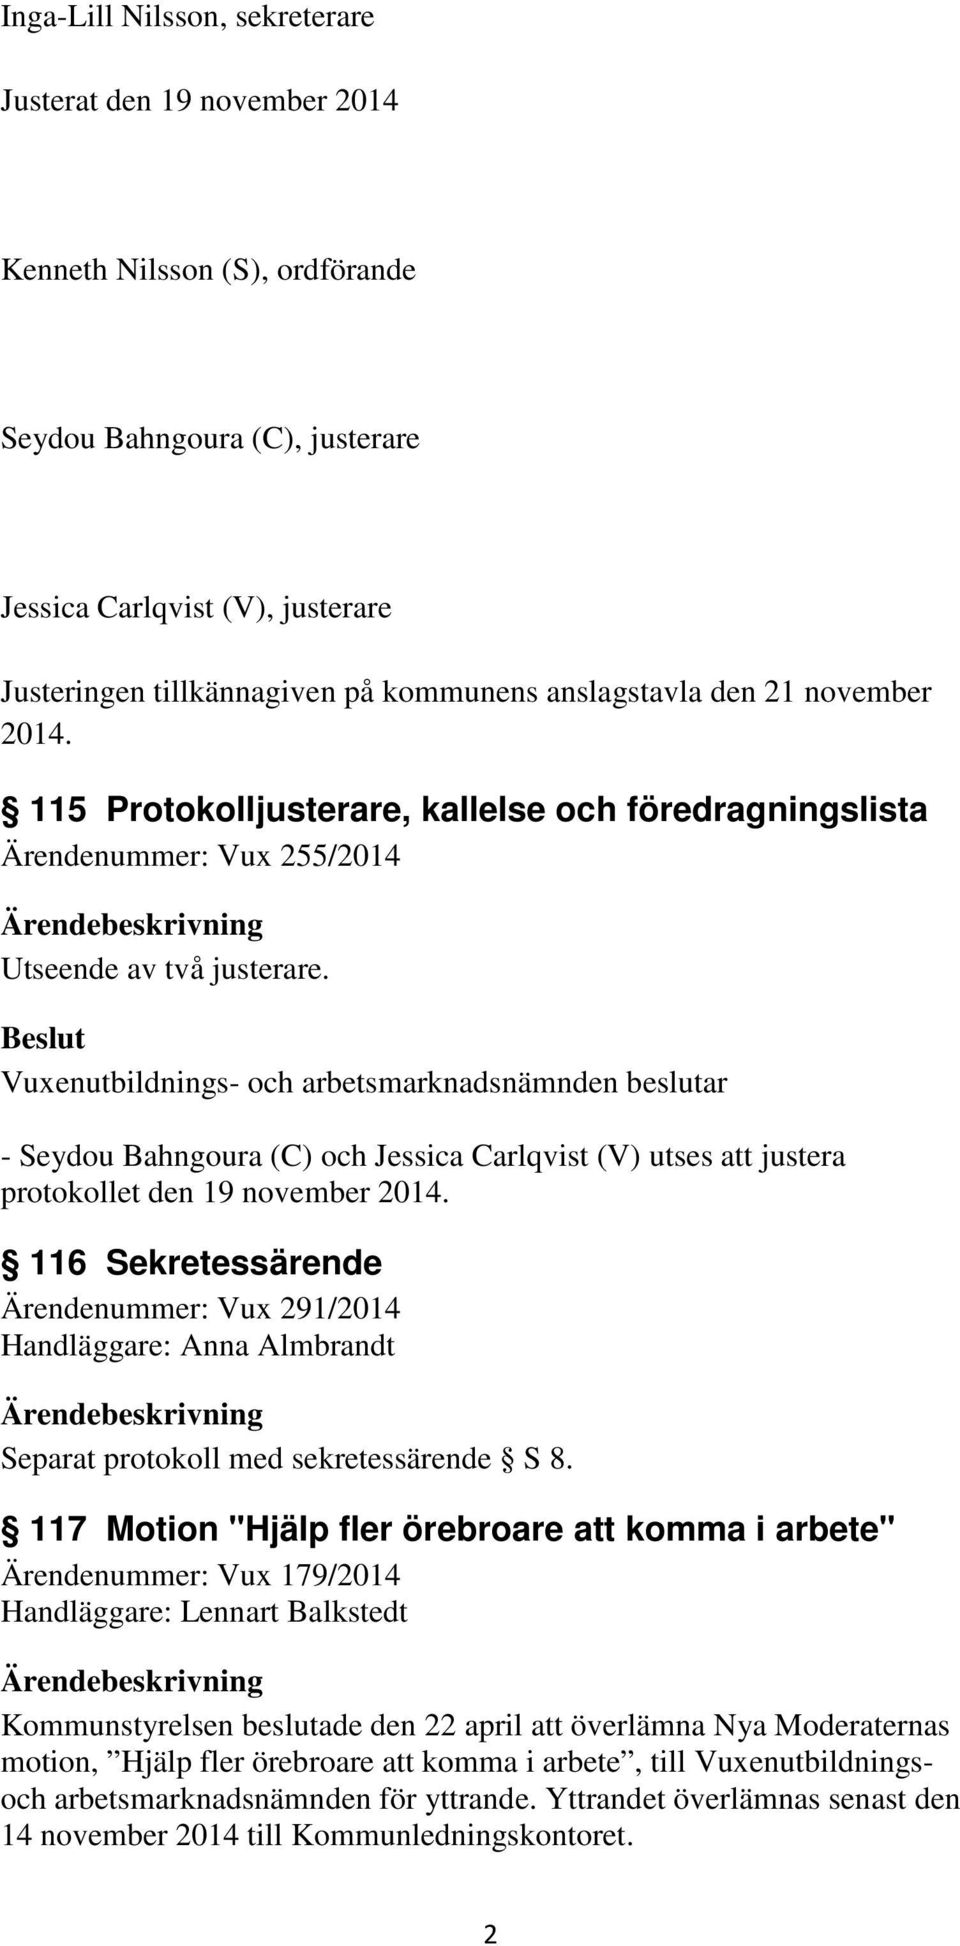 Vuxenutbildnings- och arbetsmarknadsnämnden beslutar - Seydou Bahngoura (C) och Jessica Carlqvist (V) utses att justera protokollet den 19 november 2014.